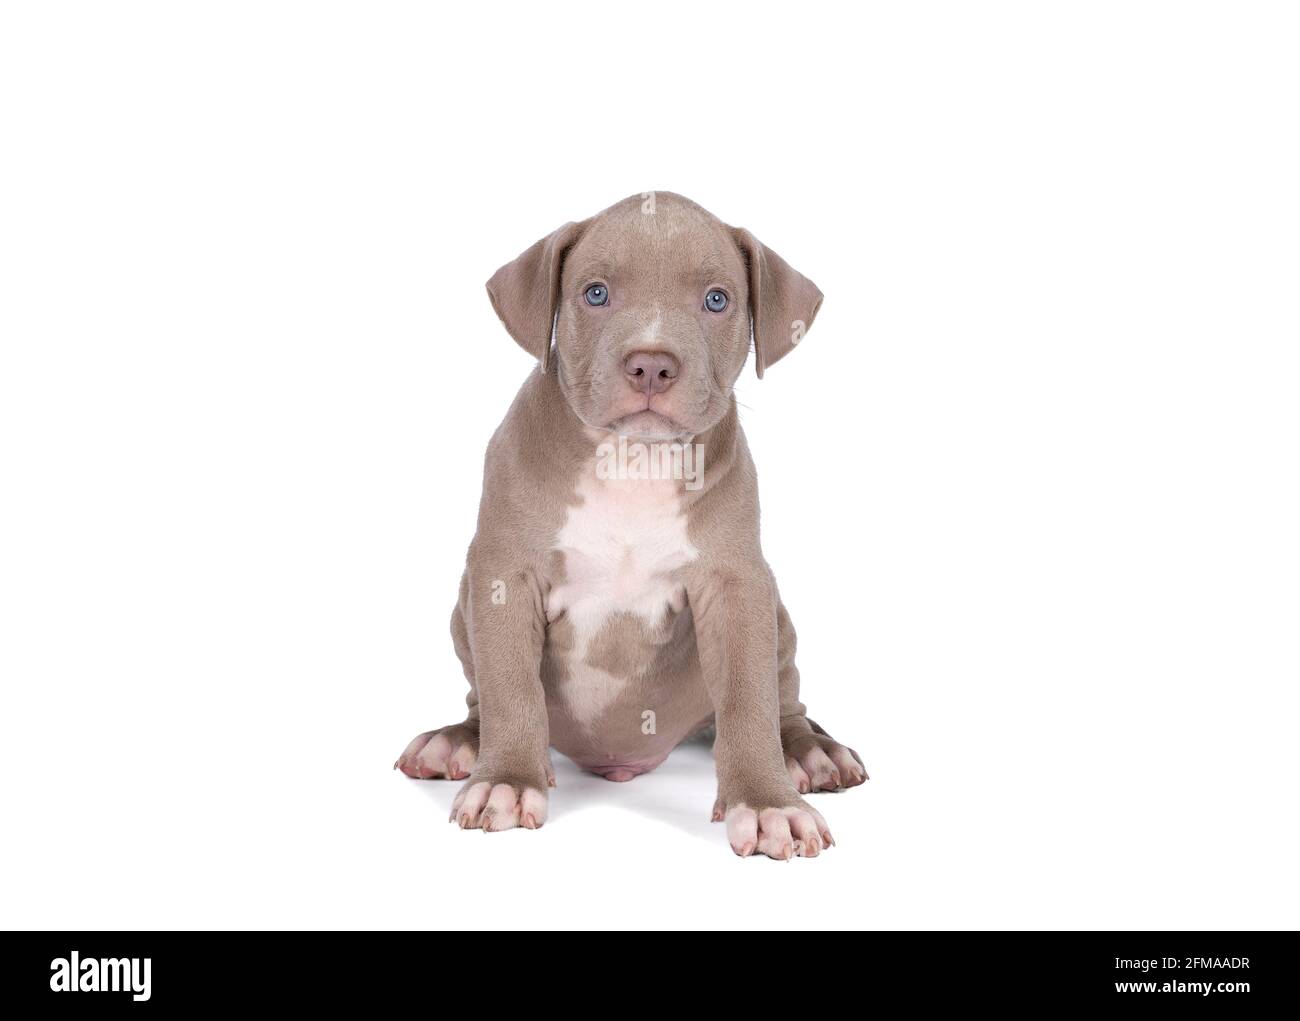 Un petit Bully américain ou Bulldog de race bleue et fourrure blanche isolée sur fond blanc Banque D'Images